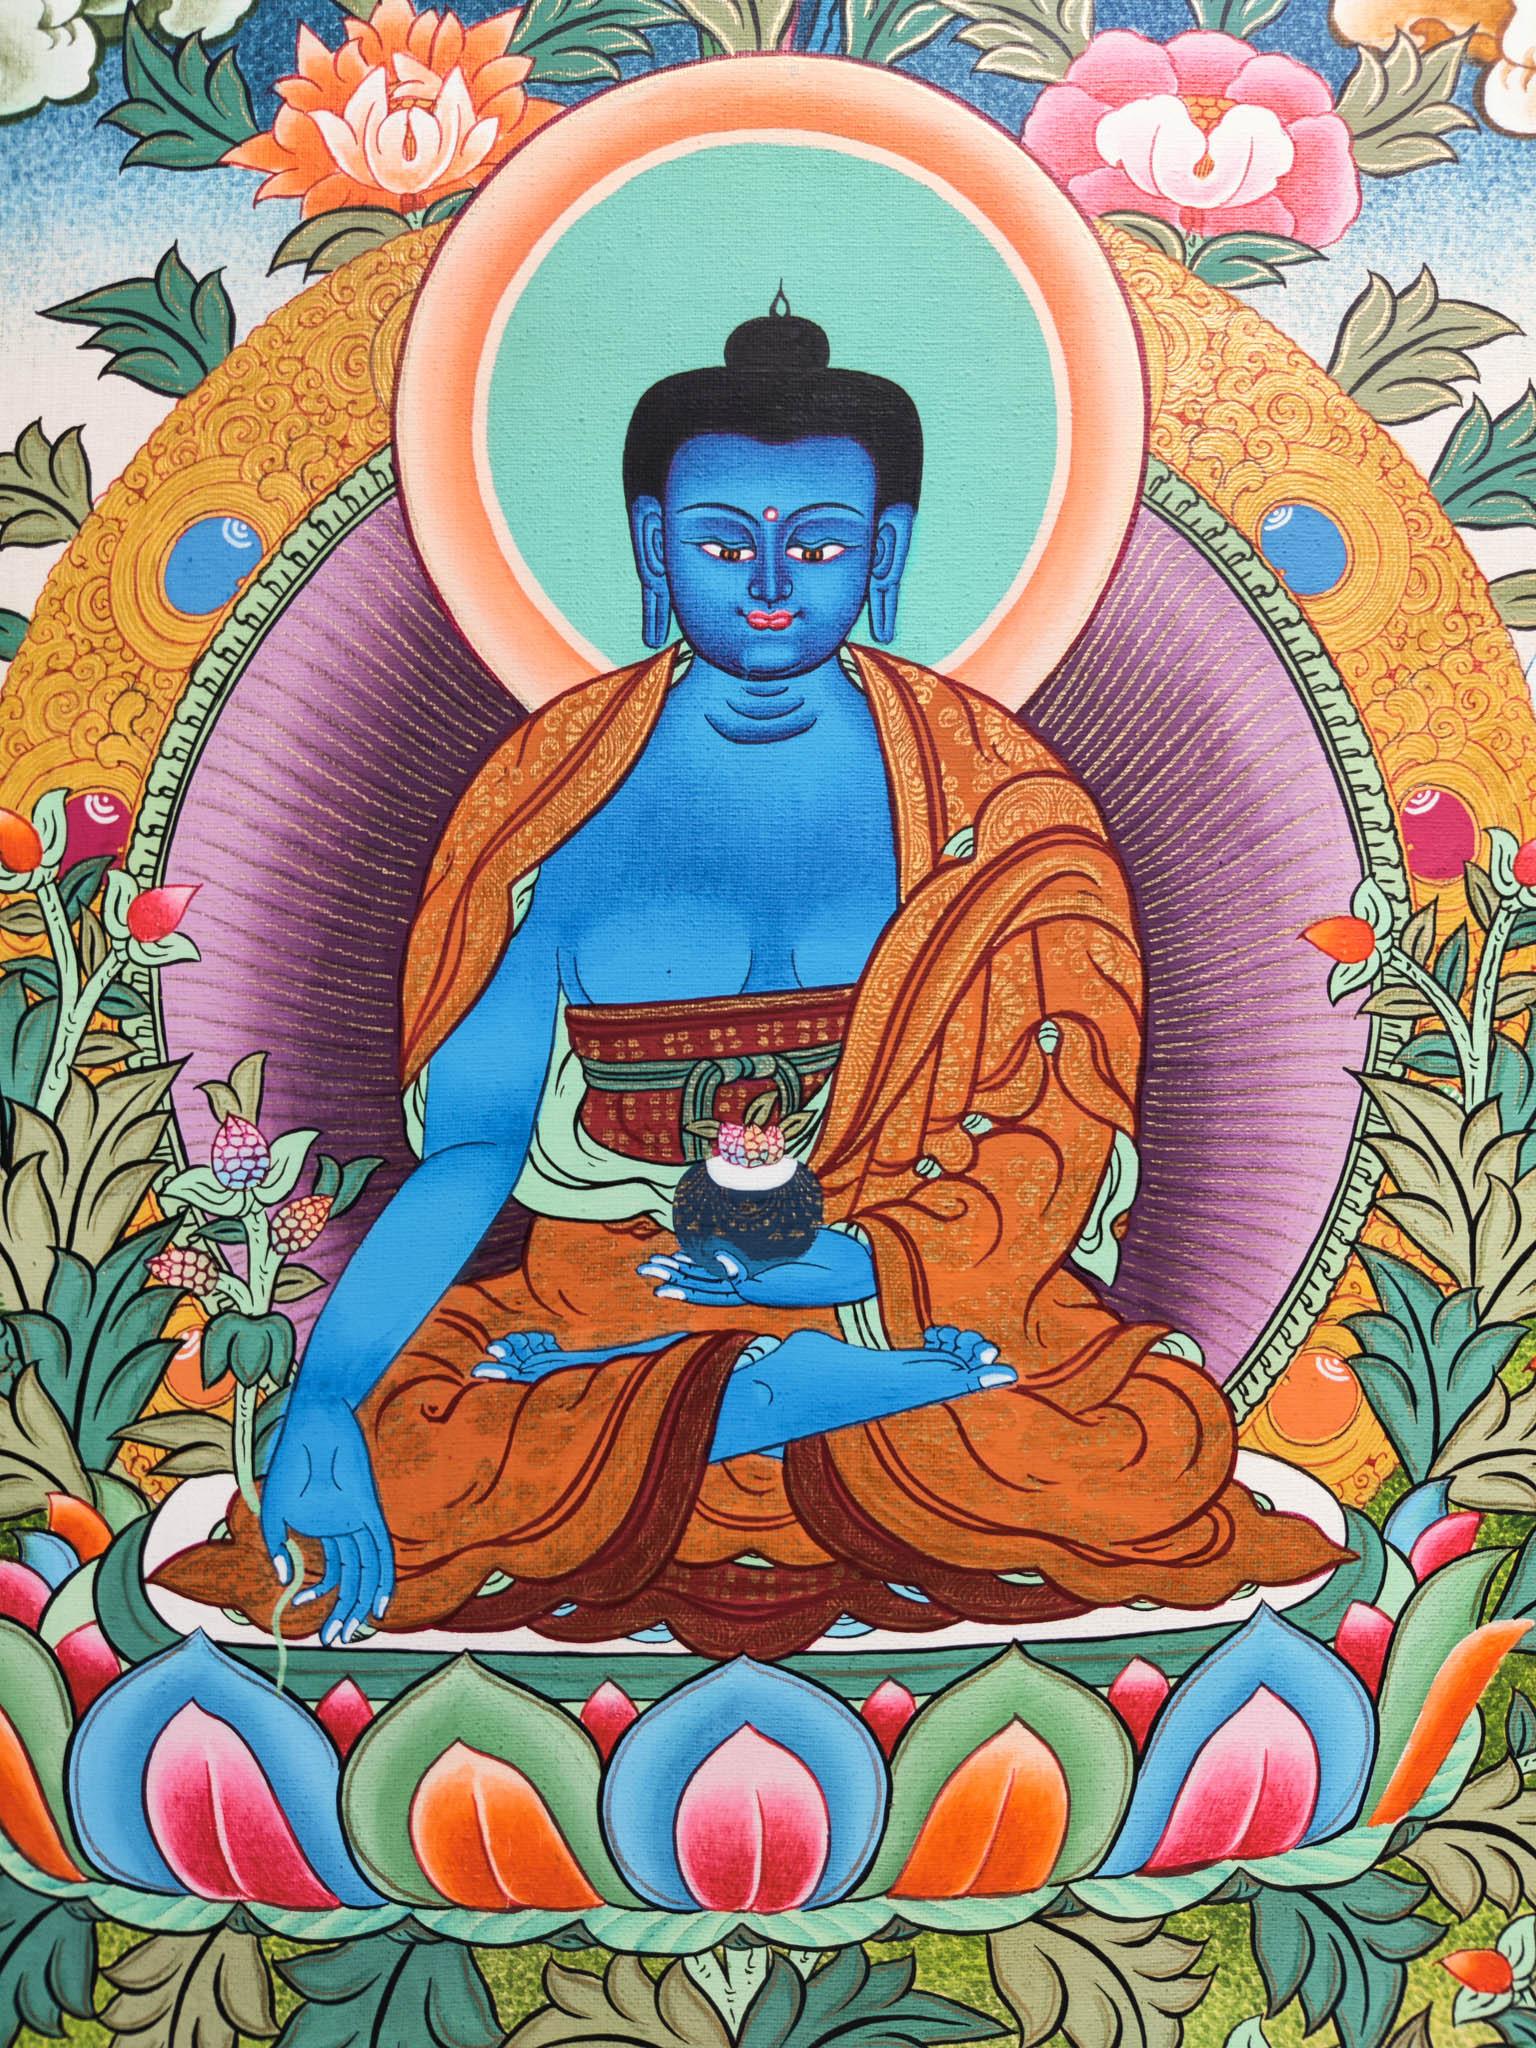 Bhaisajyaguru Healing Medicine Buddha